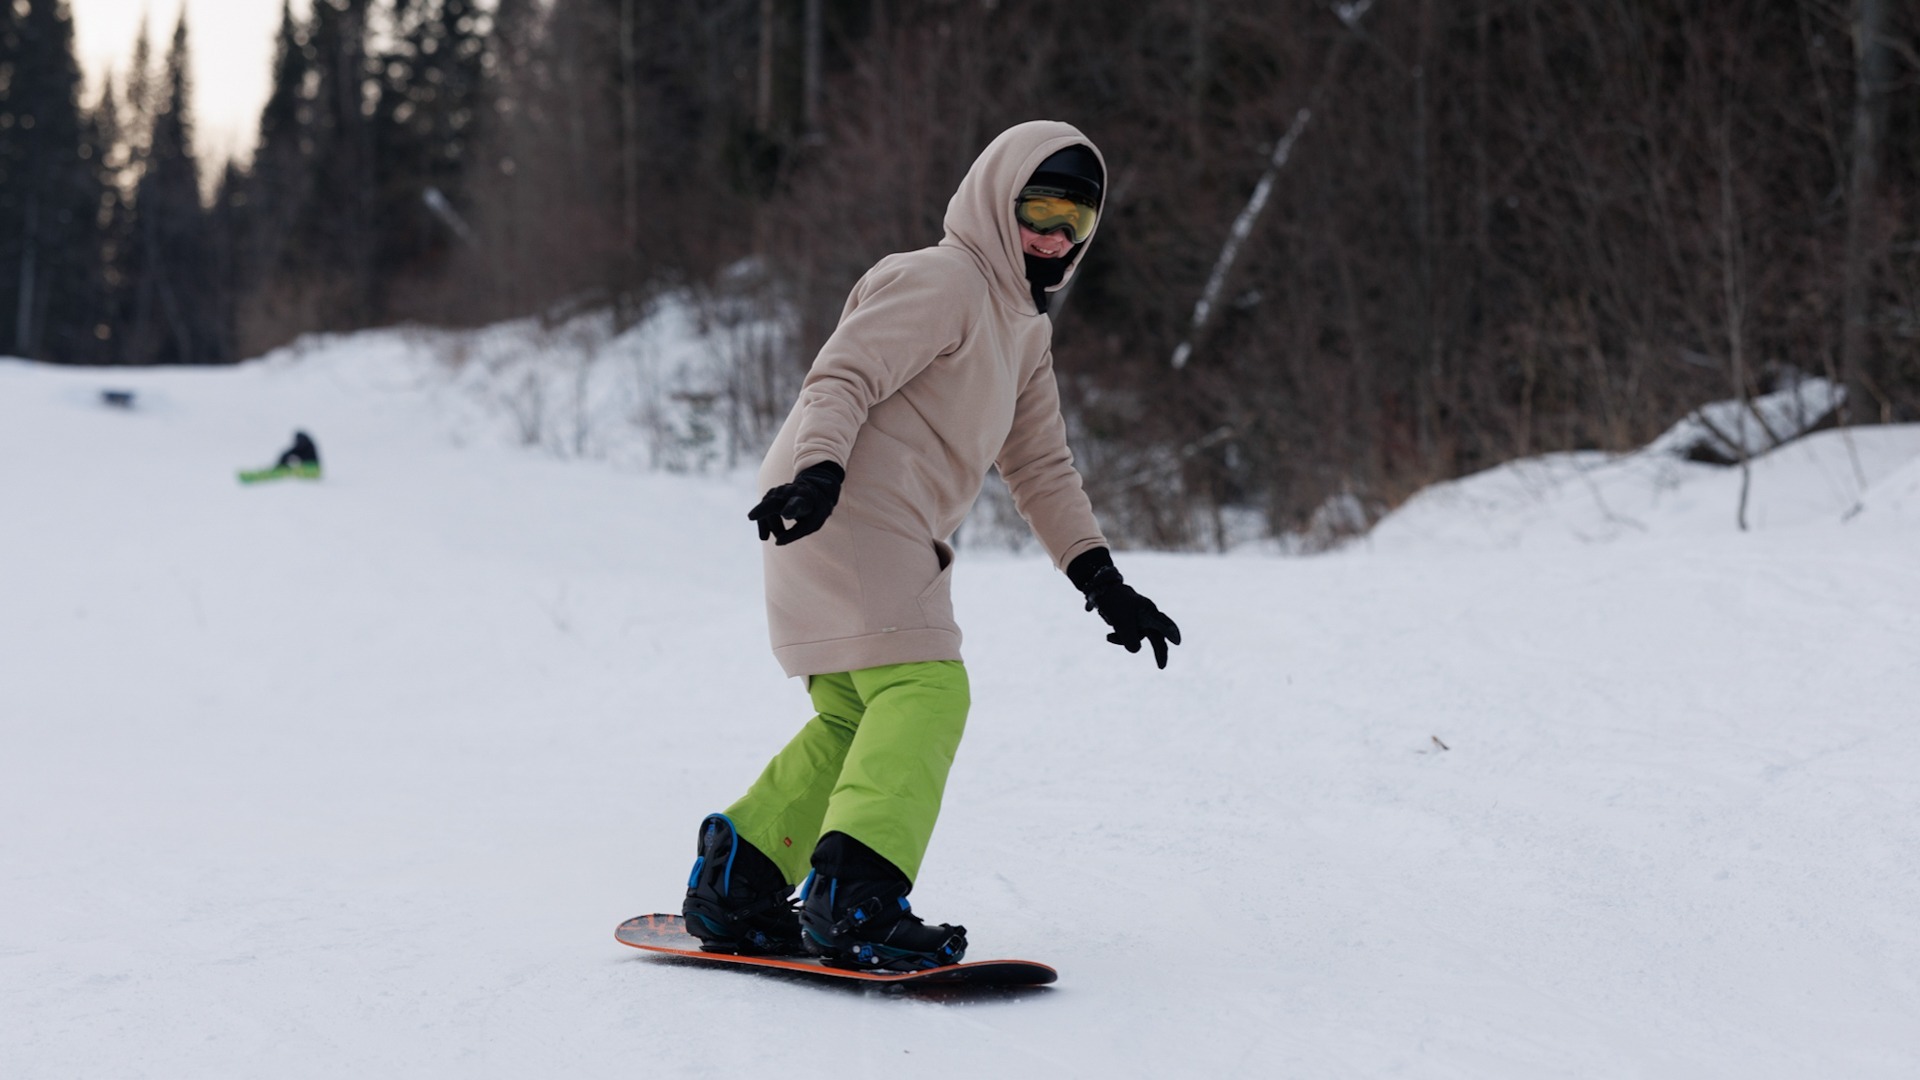 Лыжи, снег и горный воздух: Сахалин ждёт туристов на новый год и готов удивлять